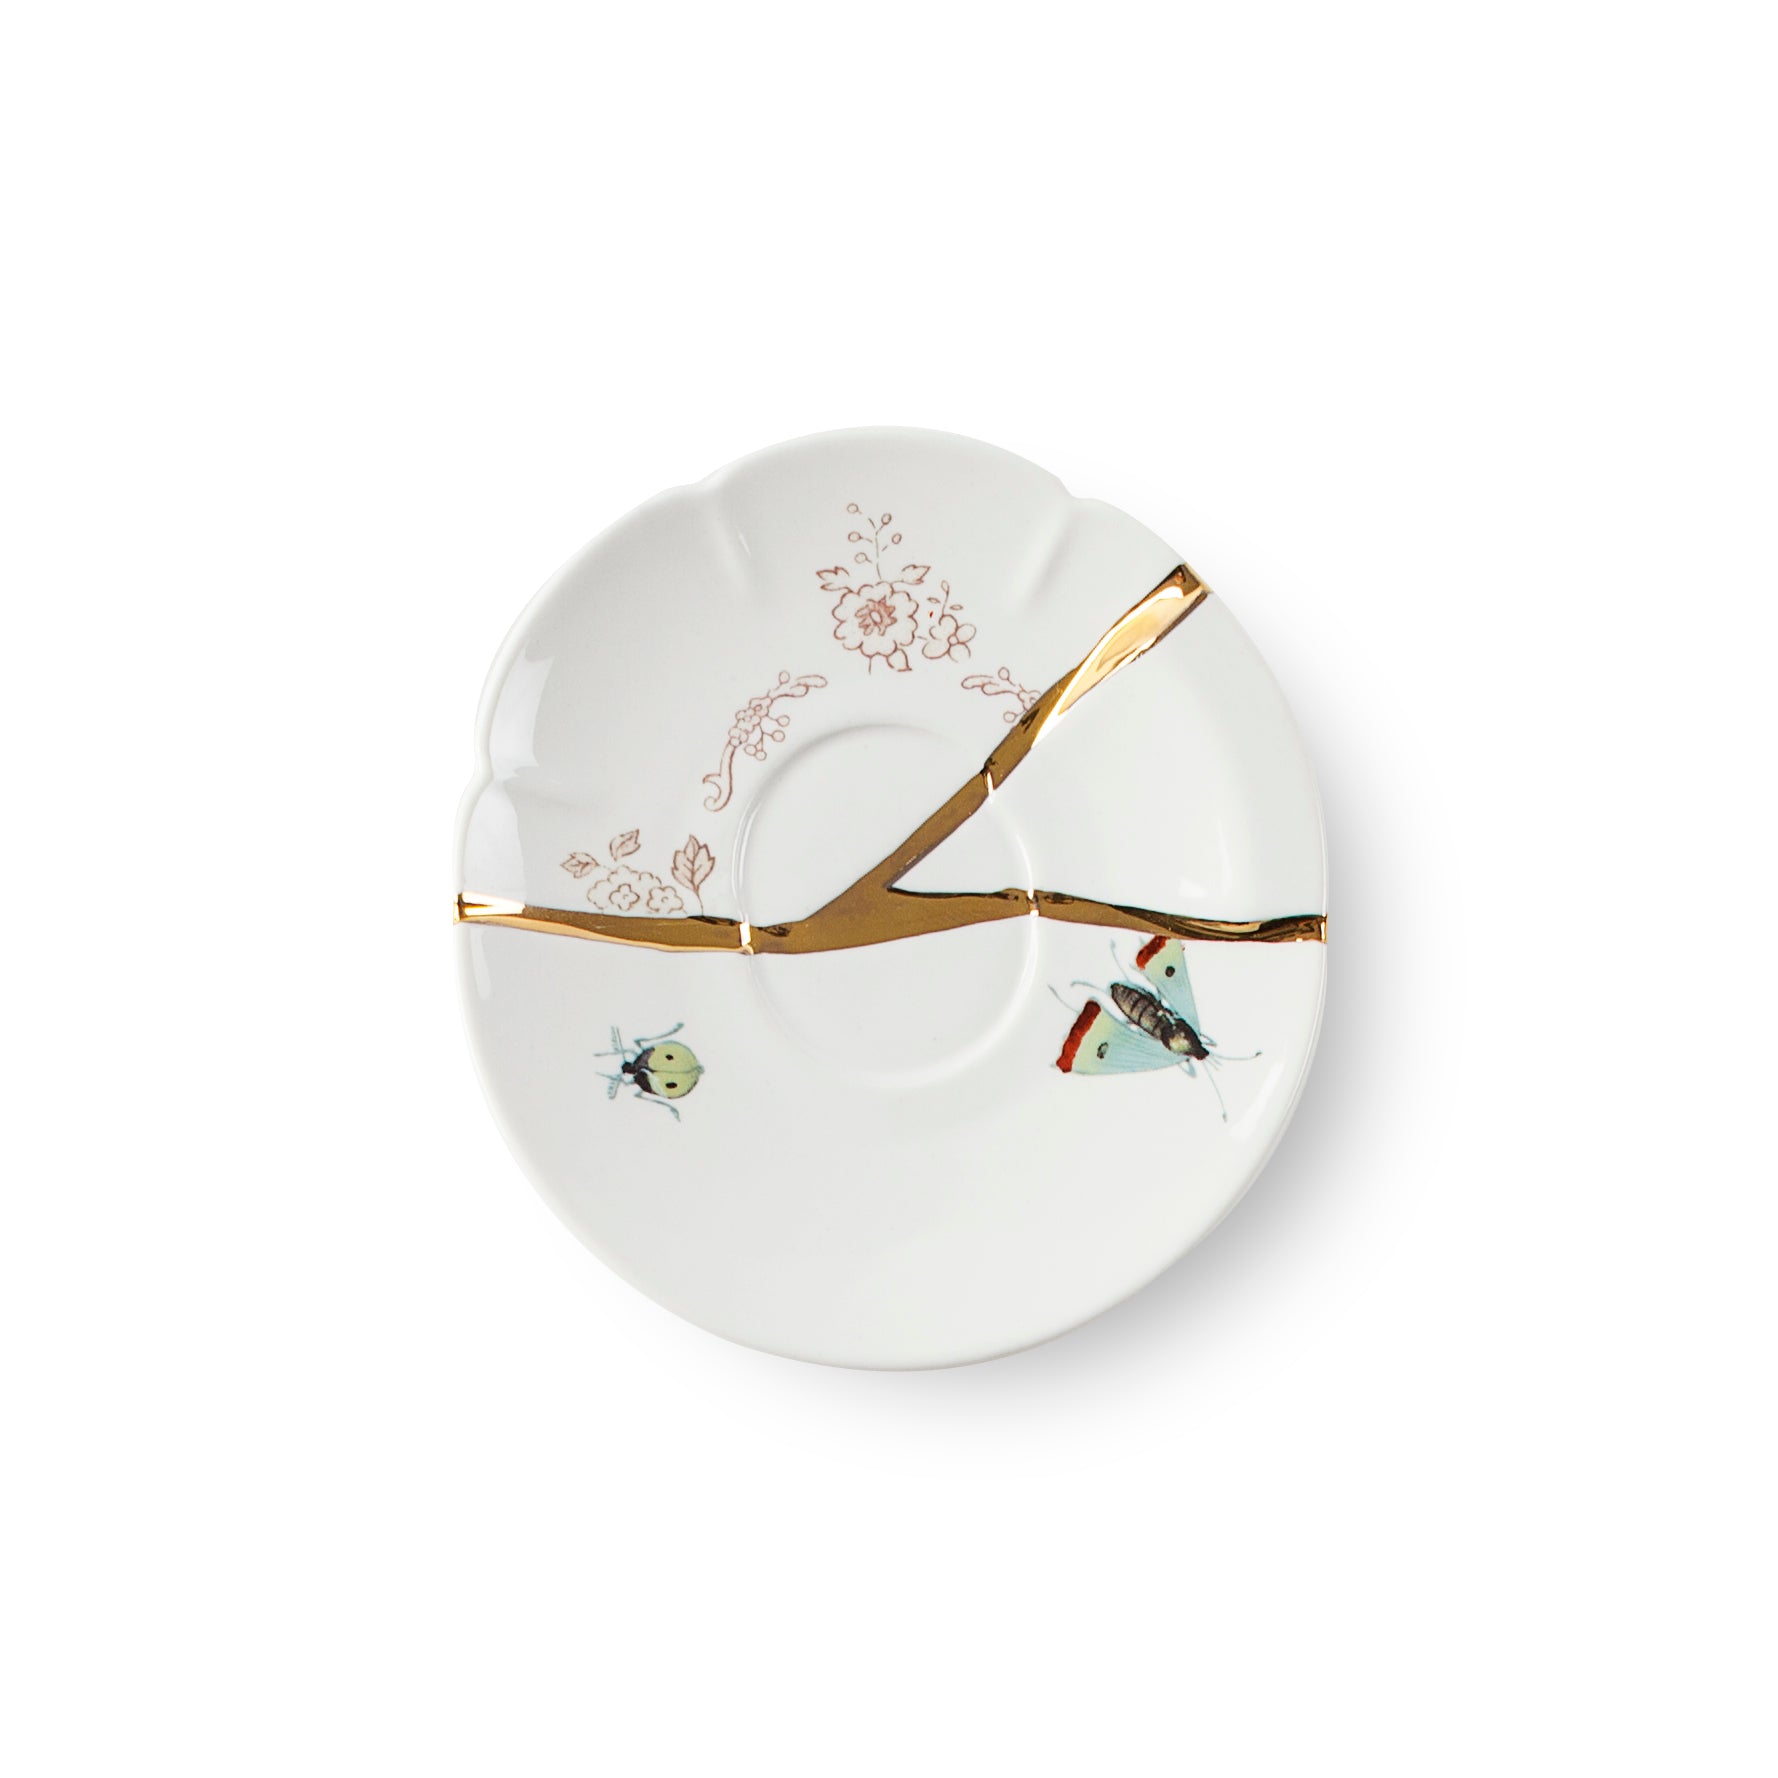 Seletti Kintsugi Tazzina caffe' con piattino in porcellana, decoro n°2